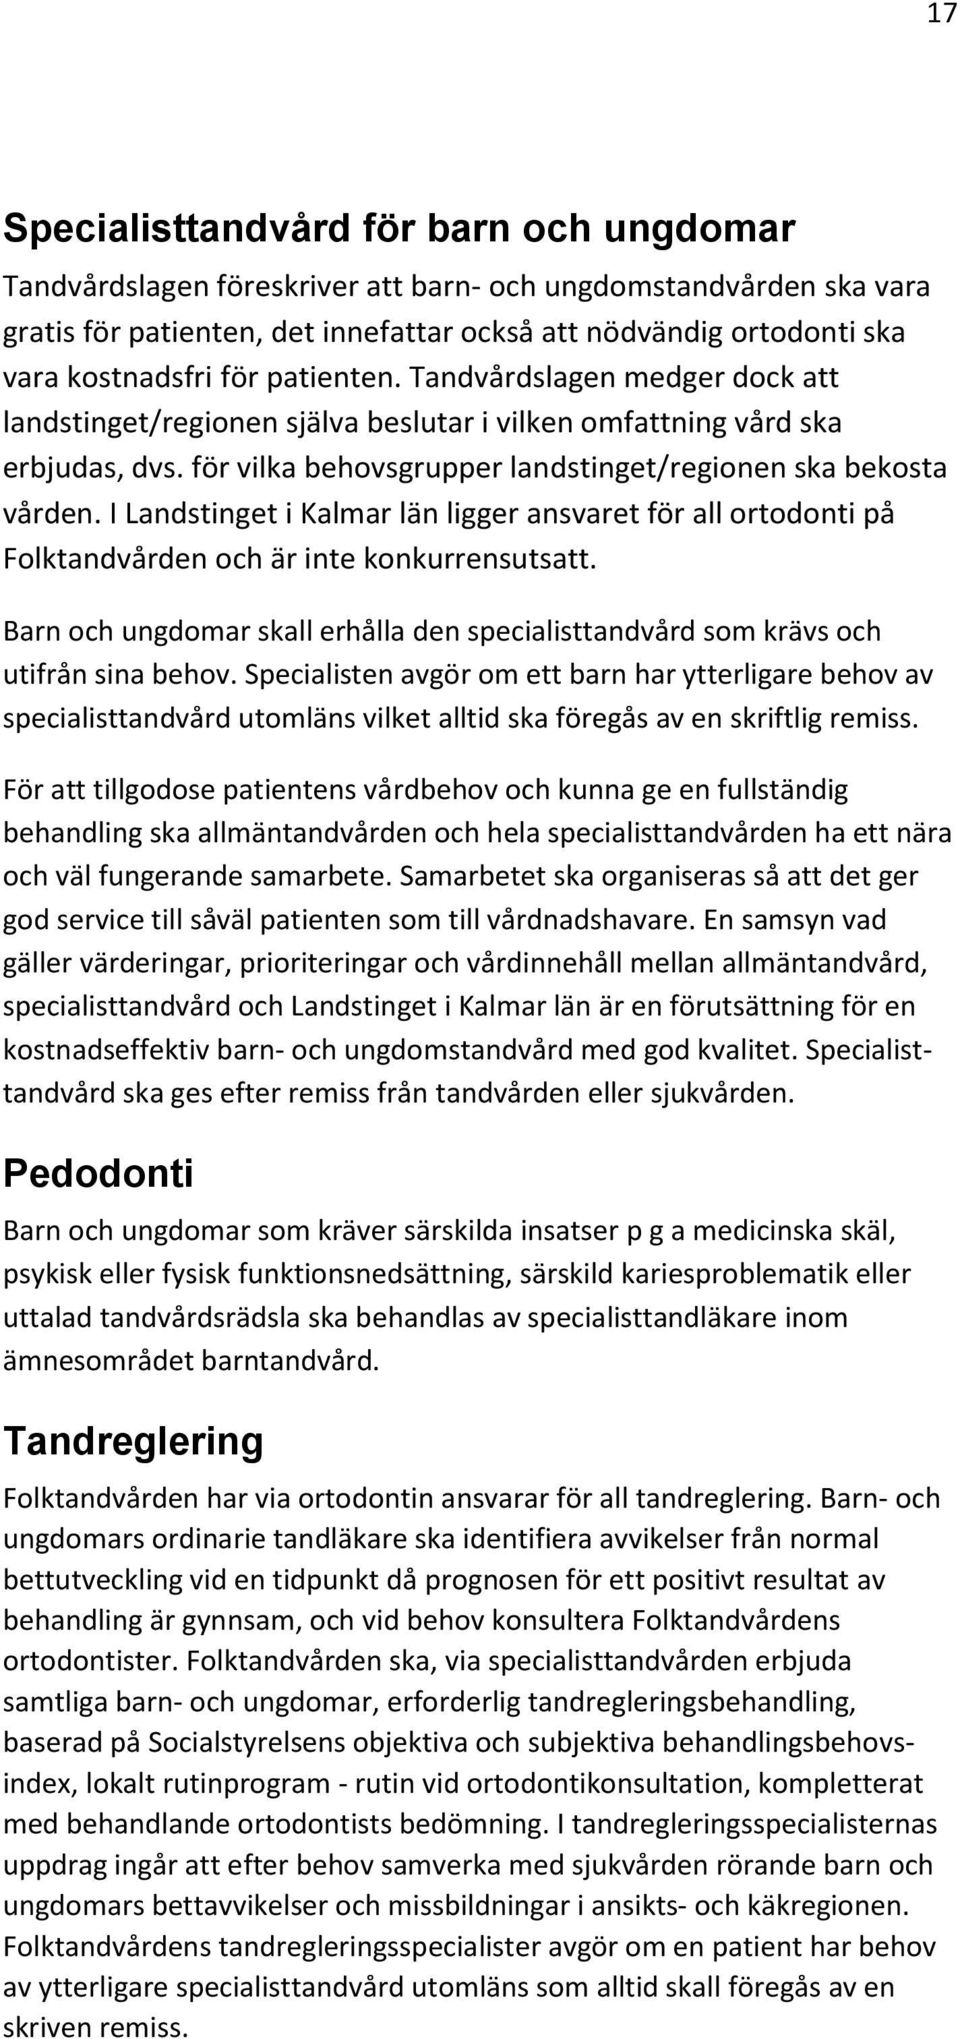 I Landstinget i Kalmar län ligger ansvaret för all ortodonti på Folktandvården och är inte konkurrensutsatt. Barn och ungdomar skall erhålla den specialisttandvård som krävs och utifrån sina behov.